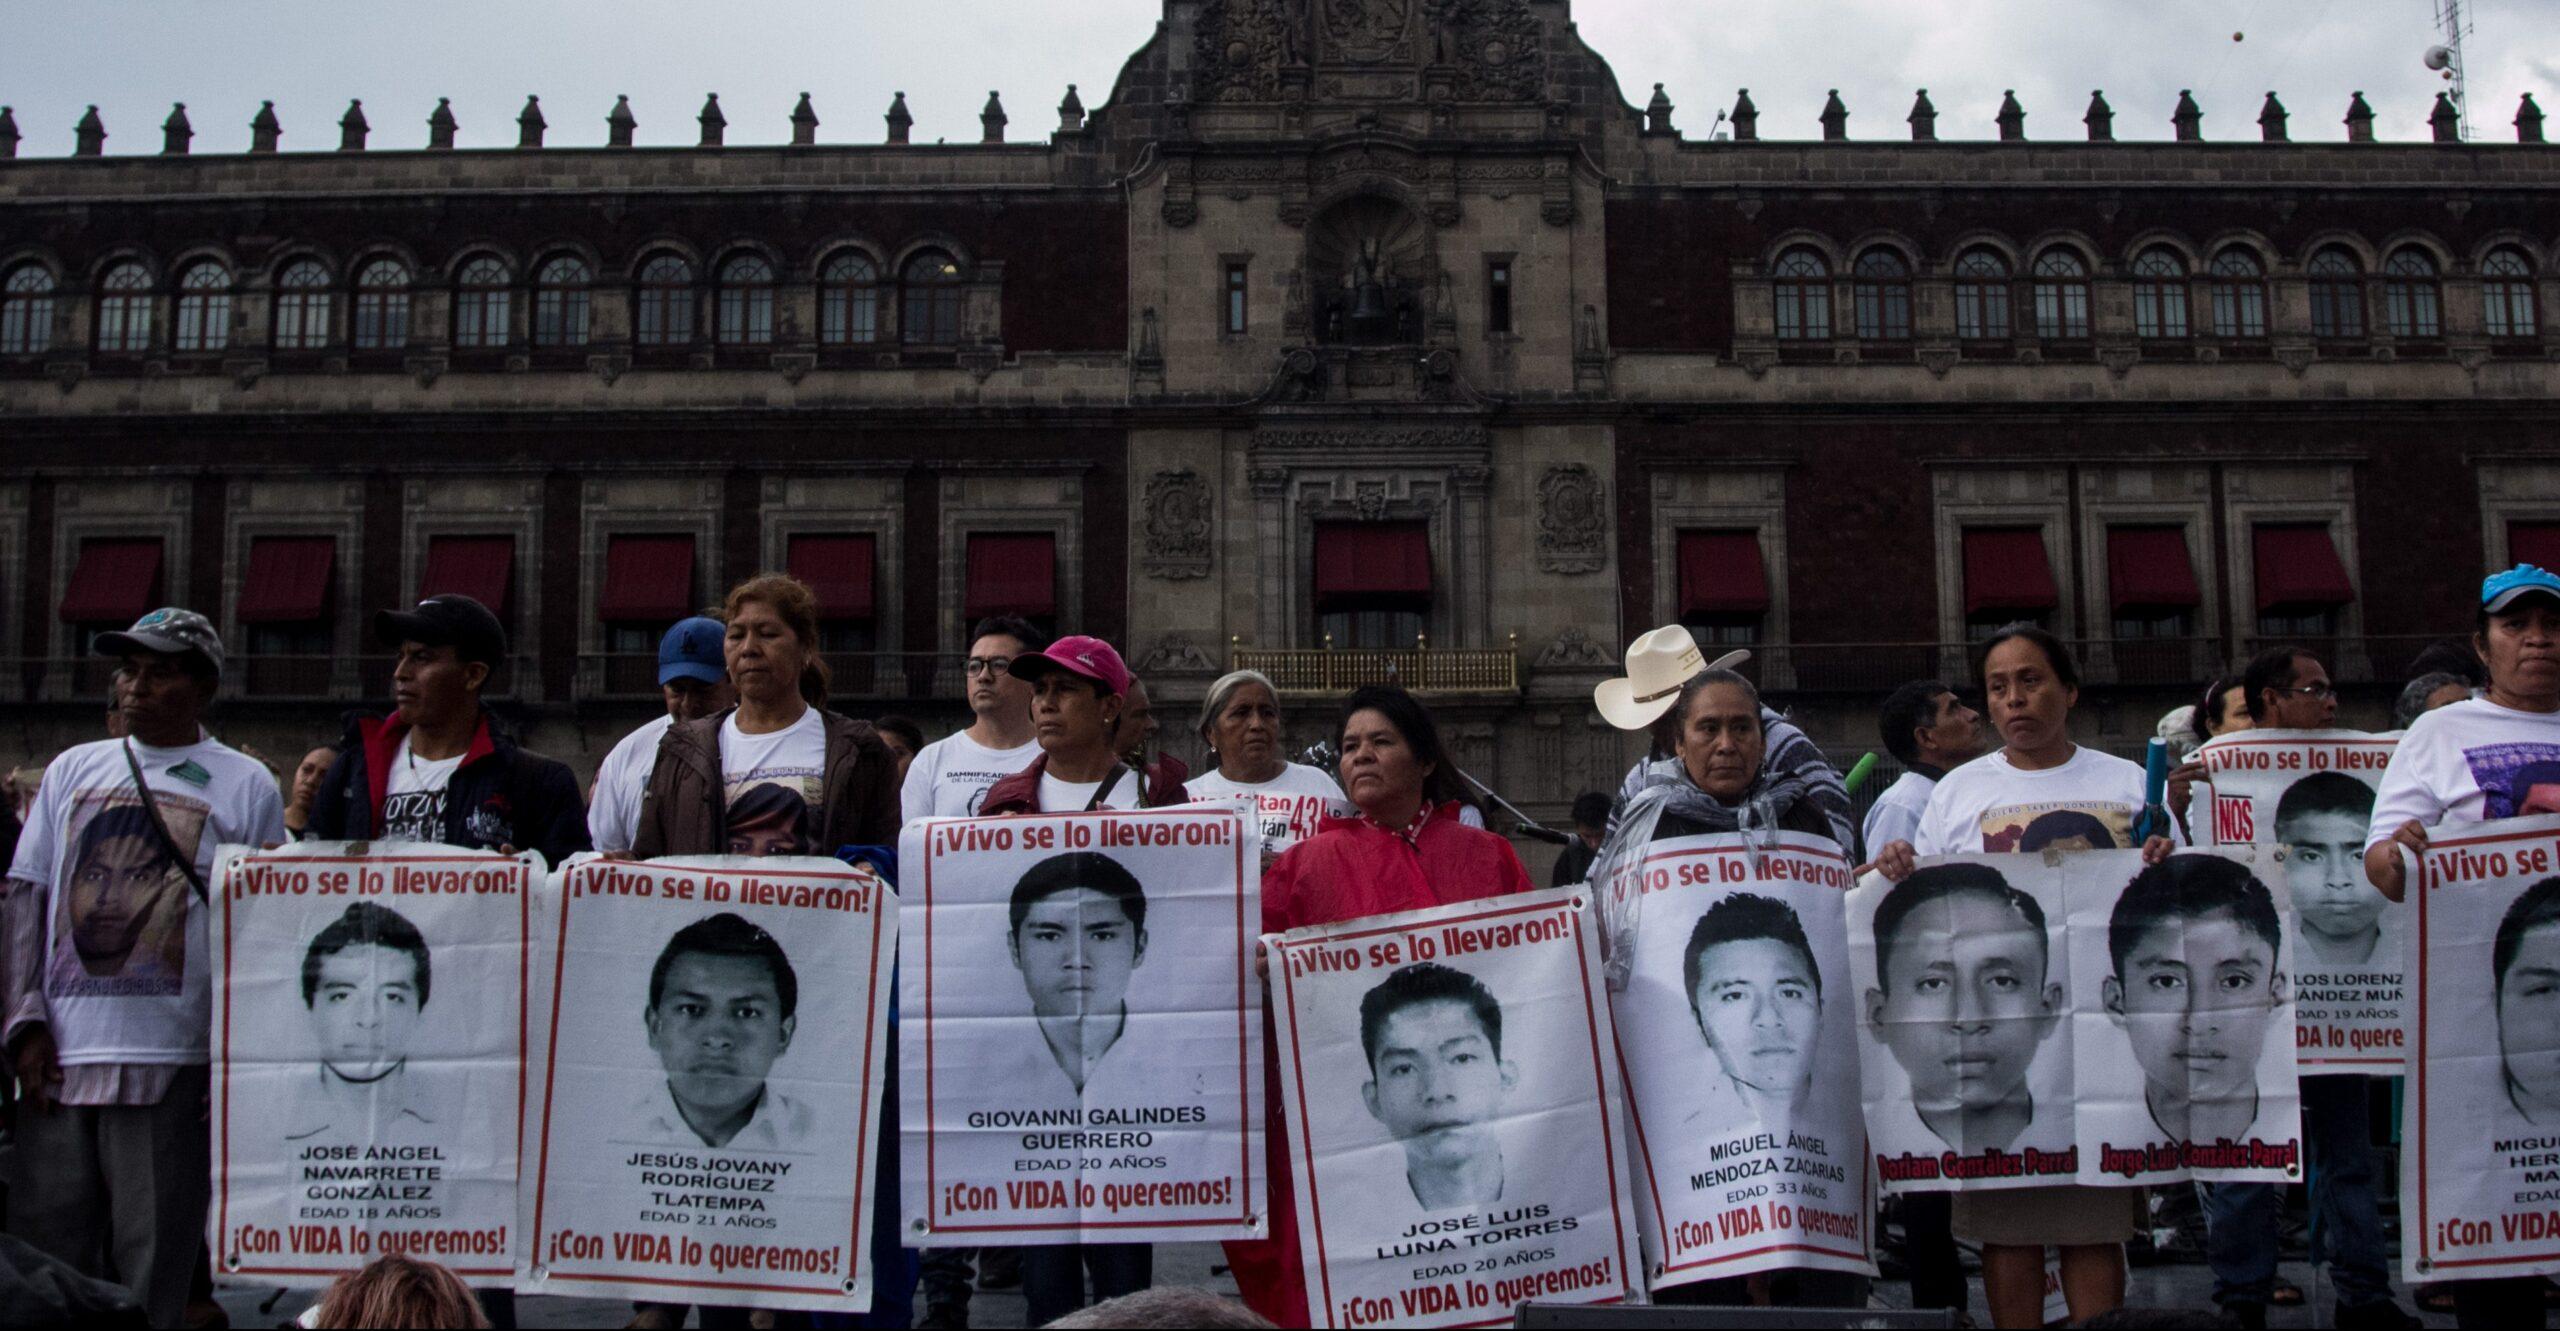 La CNDH defiende su recomendación sobre Ayotzinapa, dice que no legitima la verdad histórica